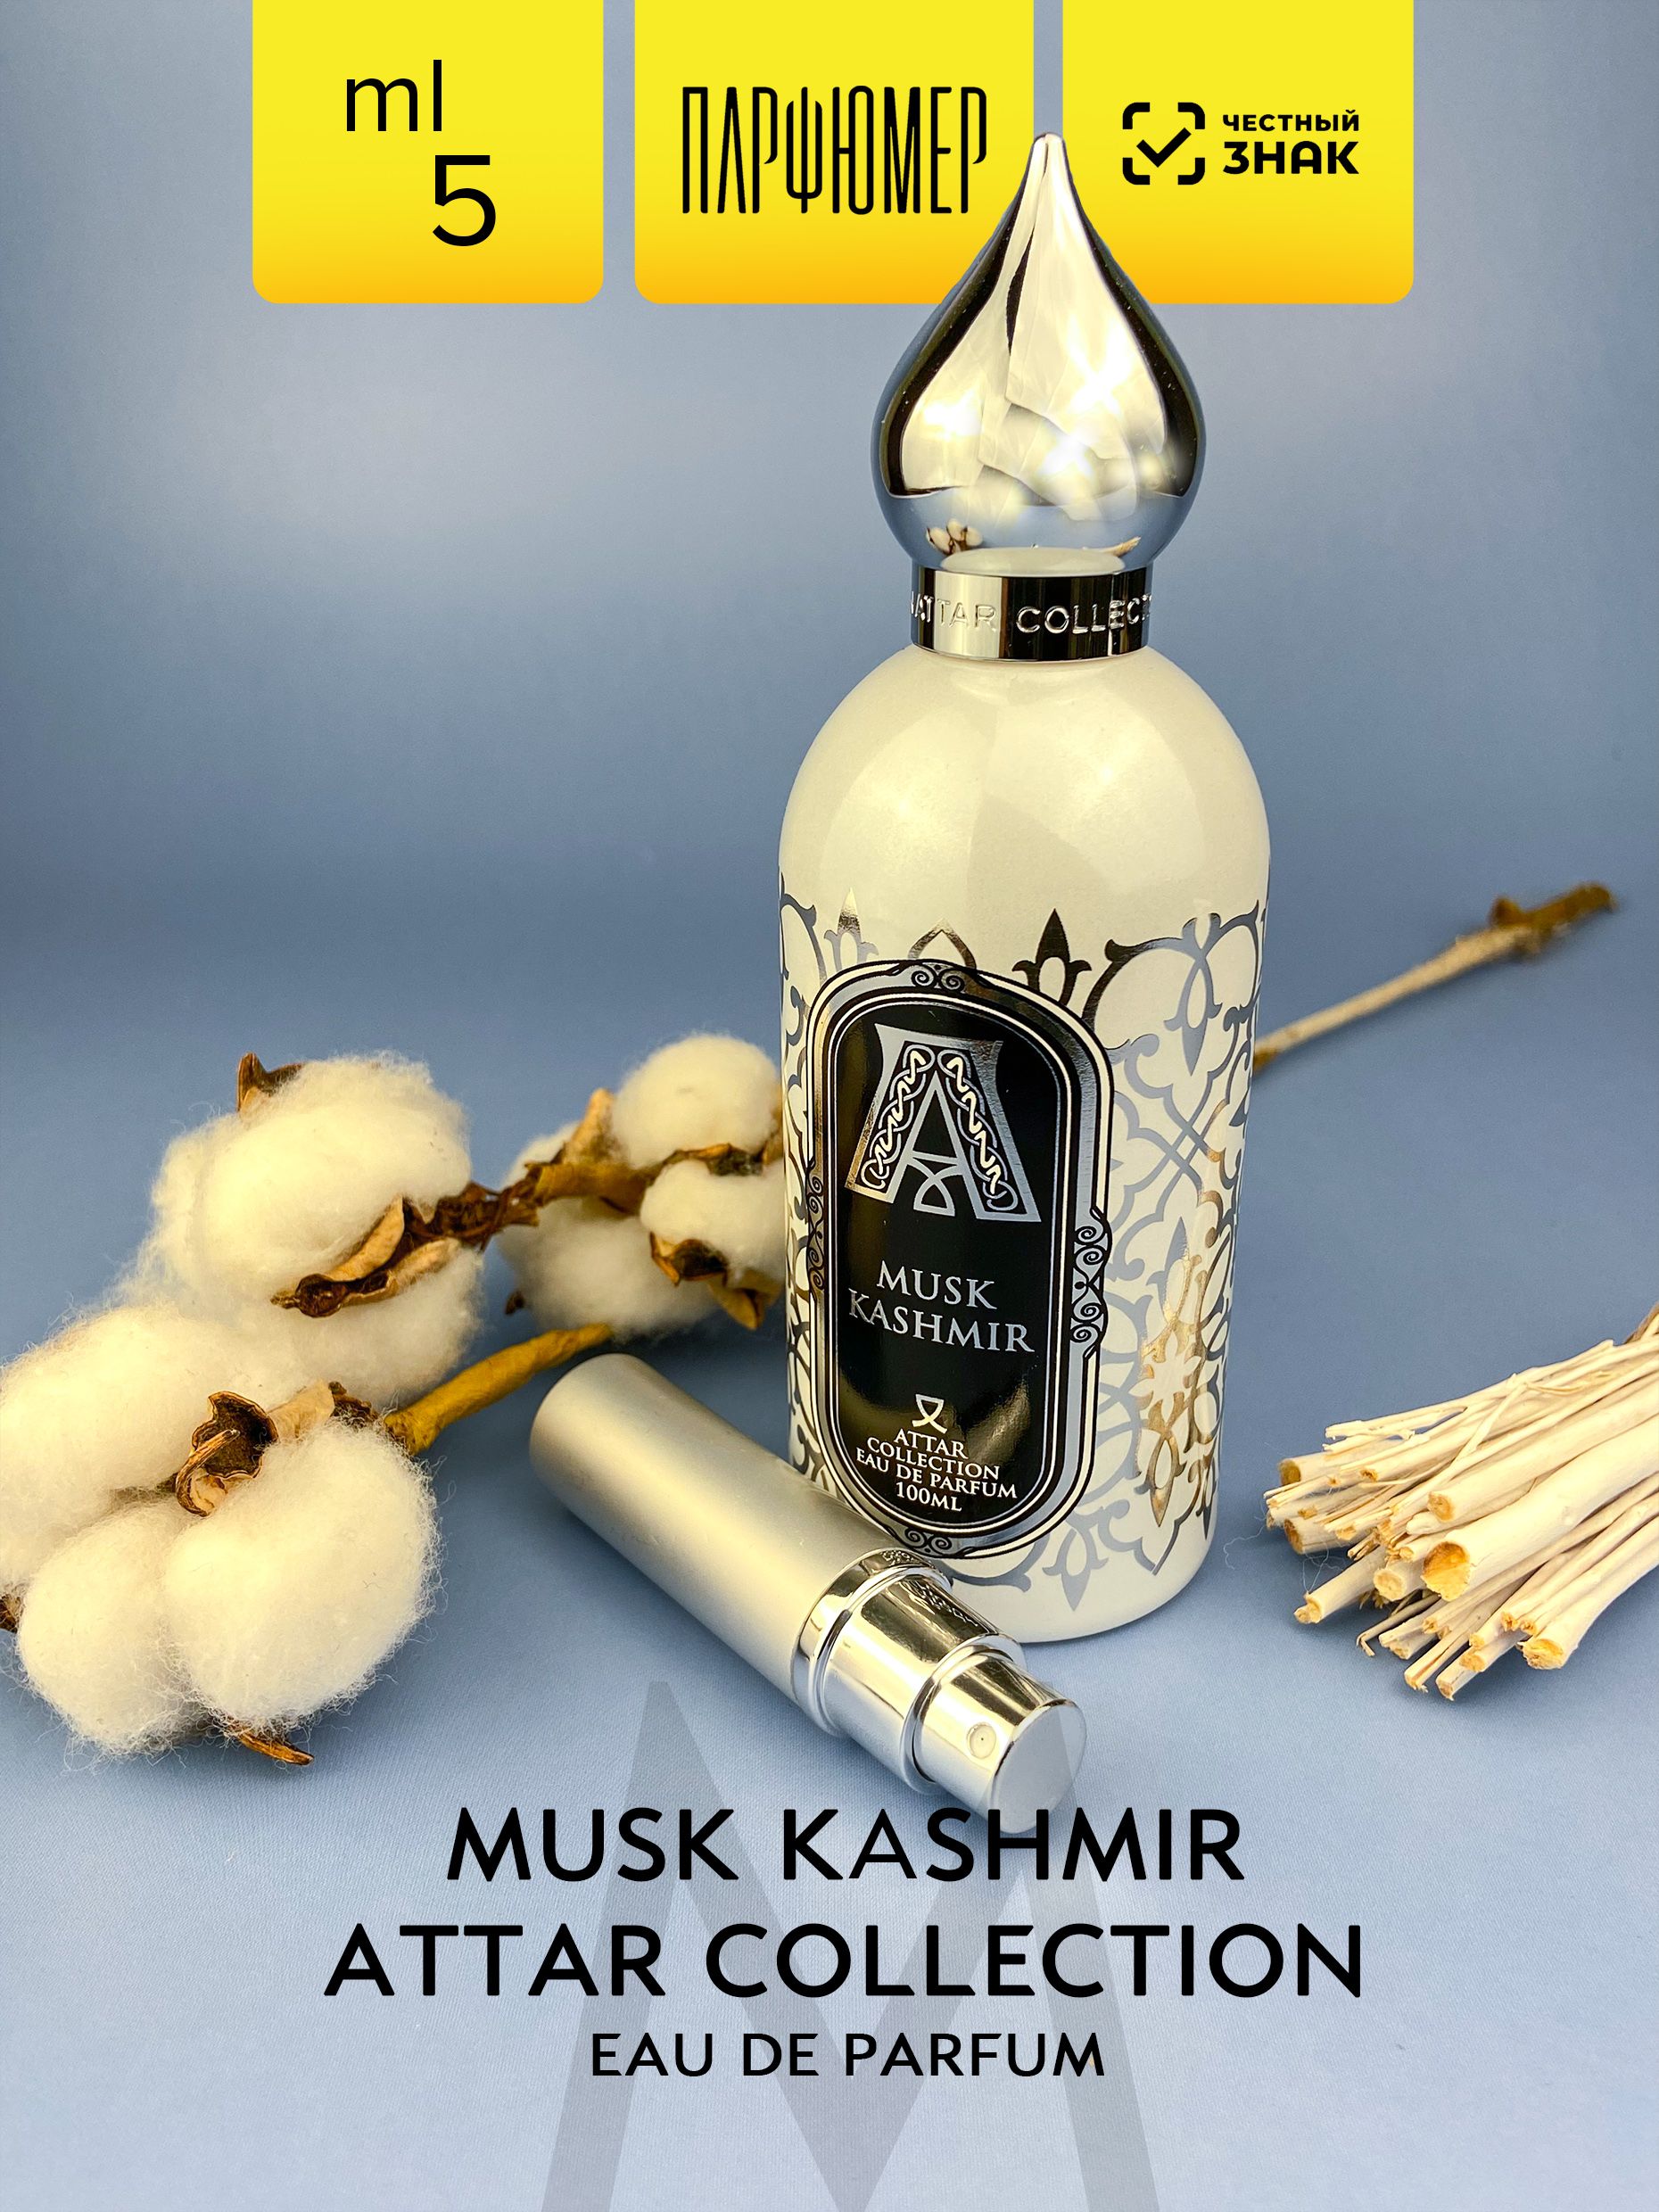 Attar collection musk kashmir отзывы. Musk Kashmir Eau de Parfum Attar collection. Musk Kashmir духи. Кашмир духи женские. Musk Kashmir Parfum описание.